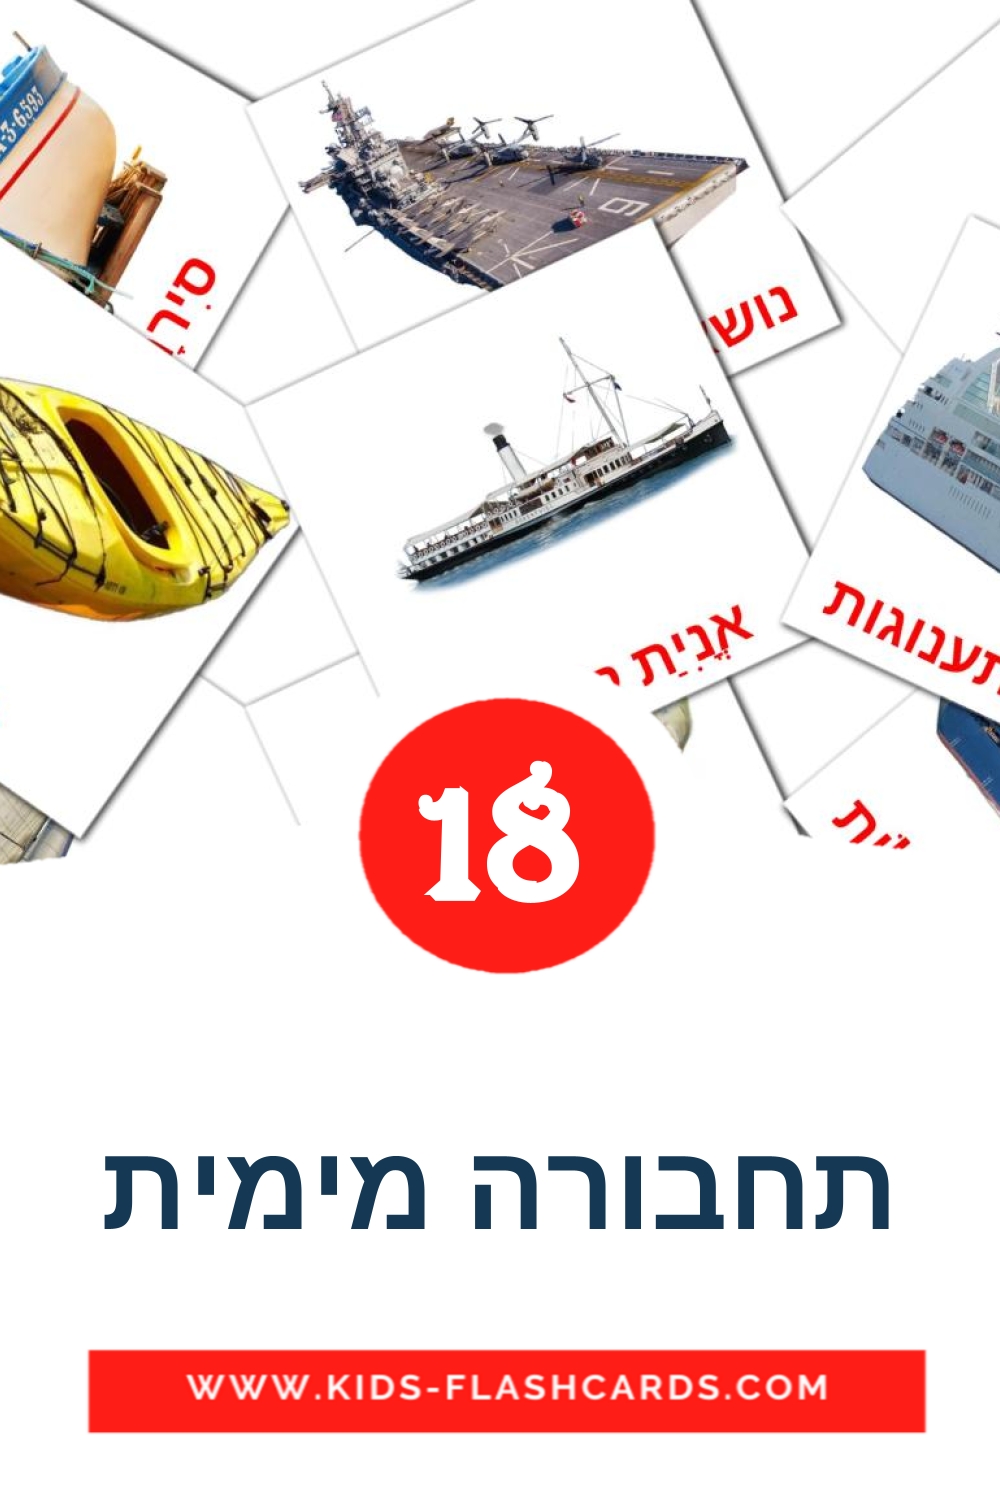 18 cartes illustrées de תחבורה מימית pour la maternelle en hébreu